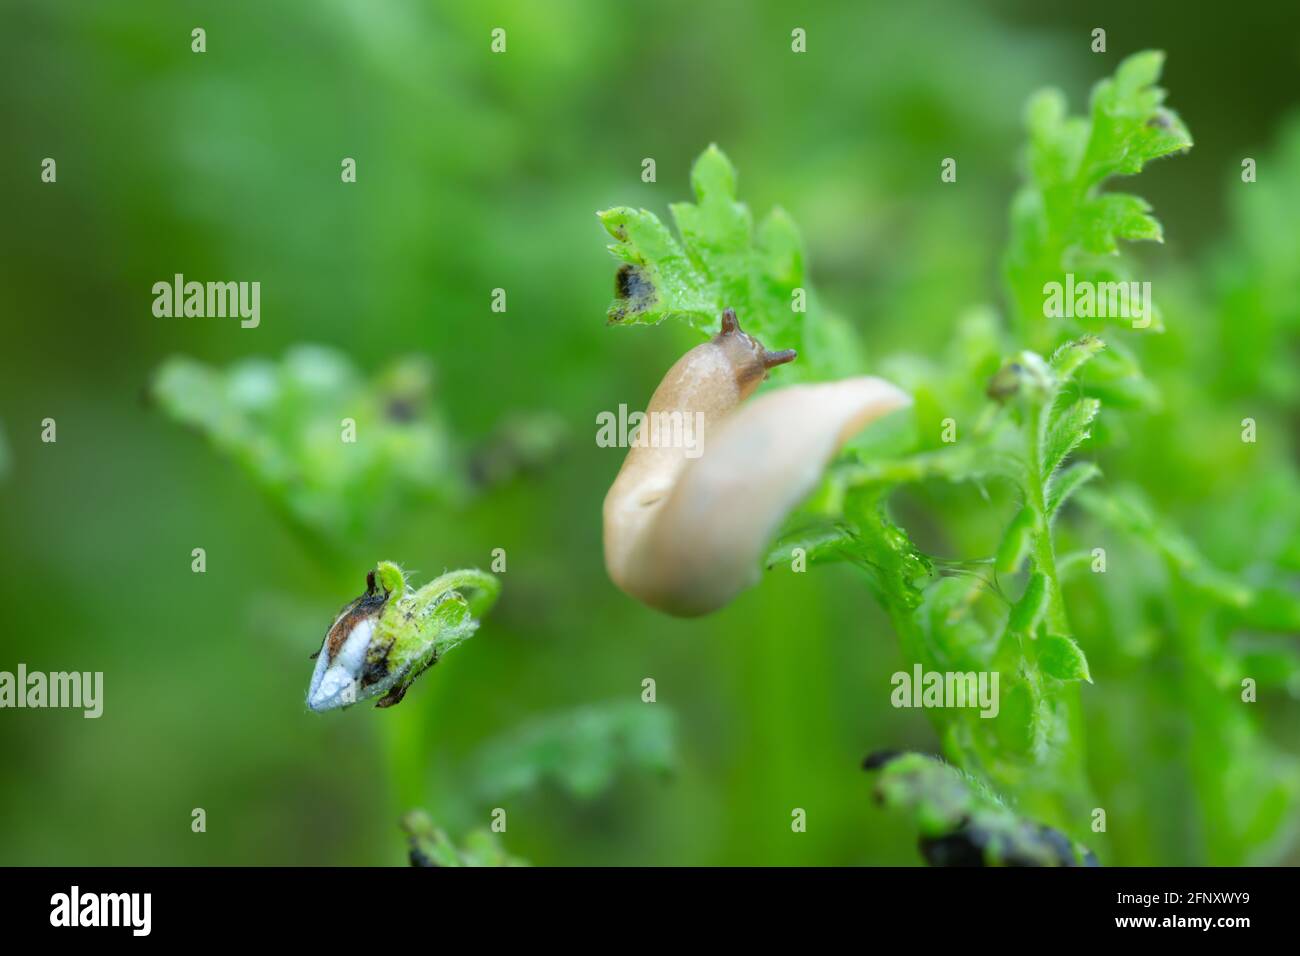 Grey field slug, Deroceras agreste feeding on plant, this slug can be a pest in gardens Stock Photo